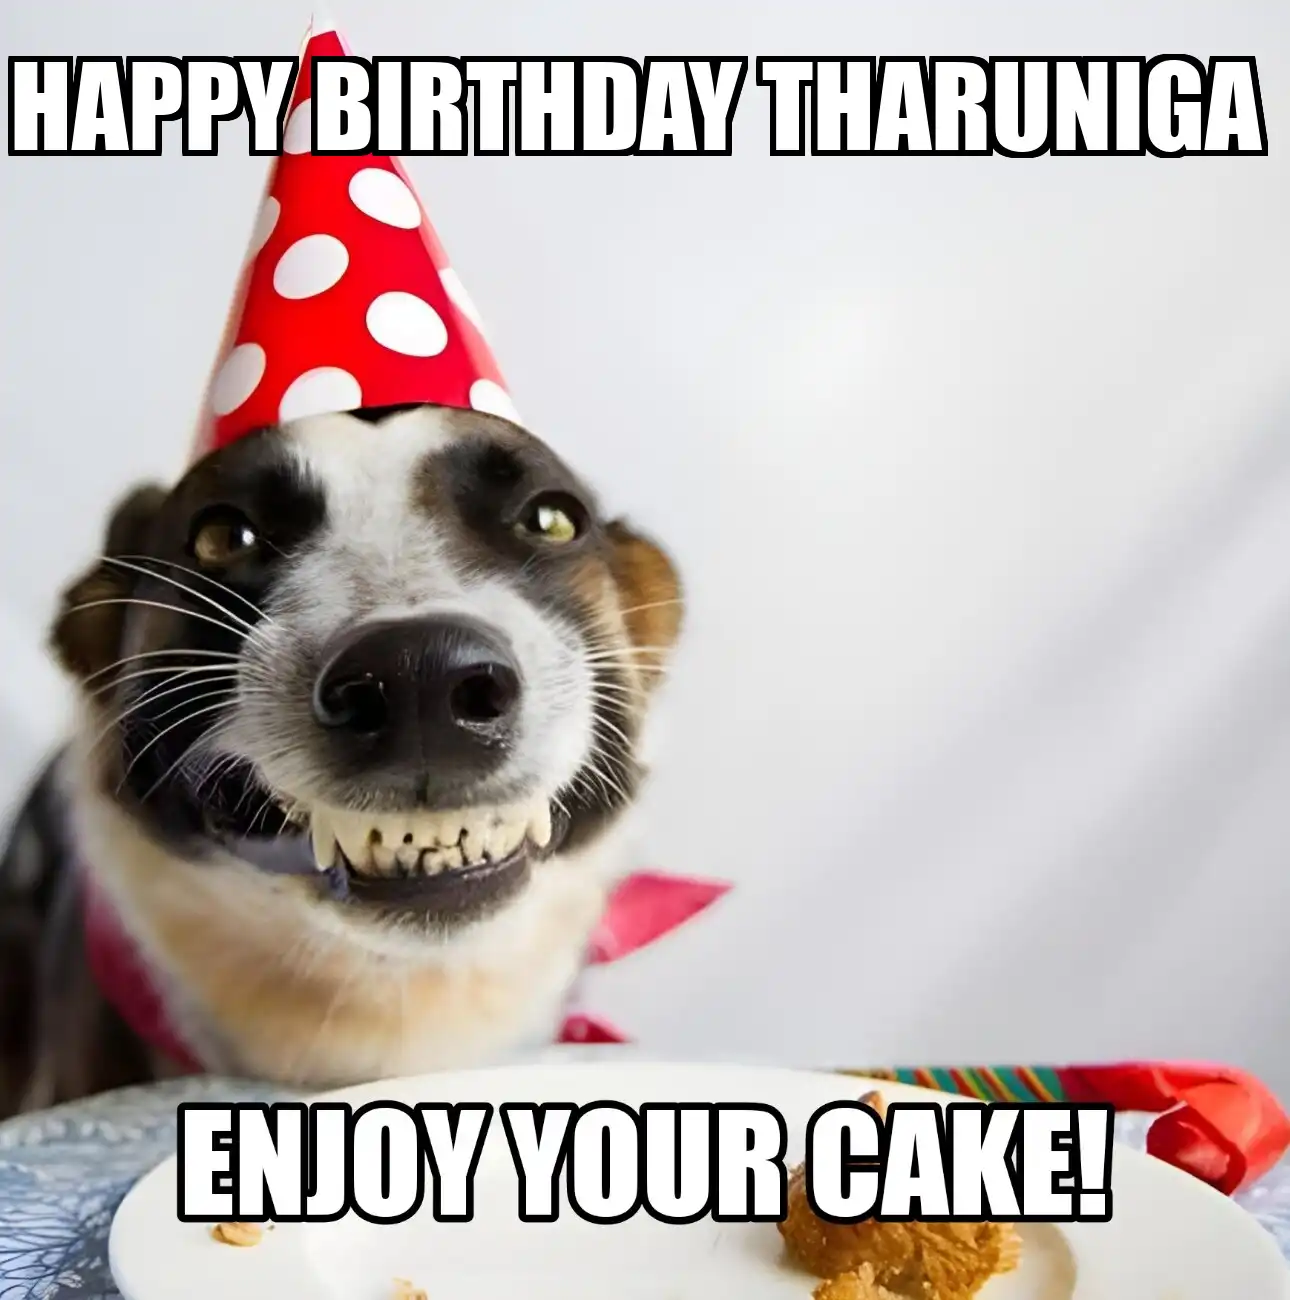 Happy Birthday Tharuniga Enjoy Your Cake Dog Meme